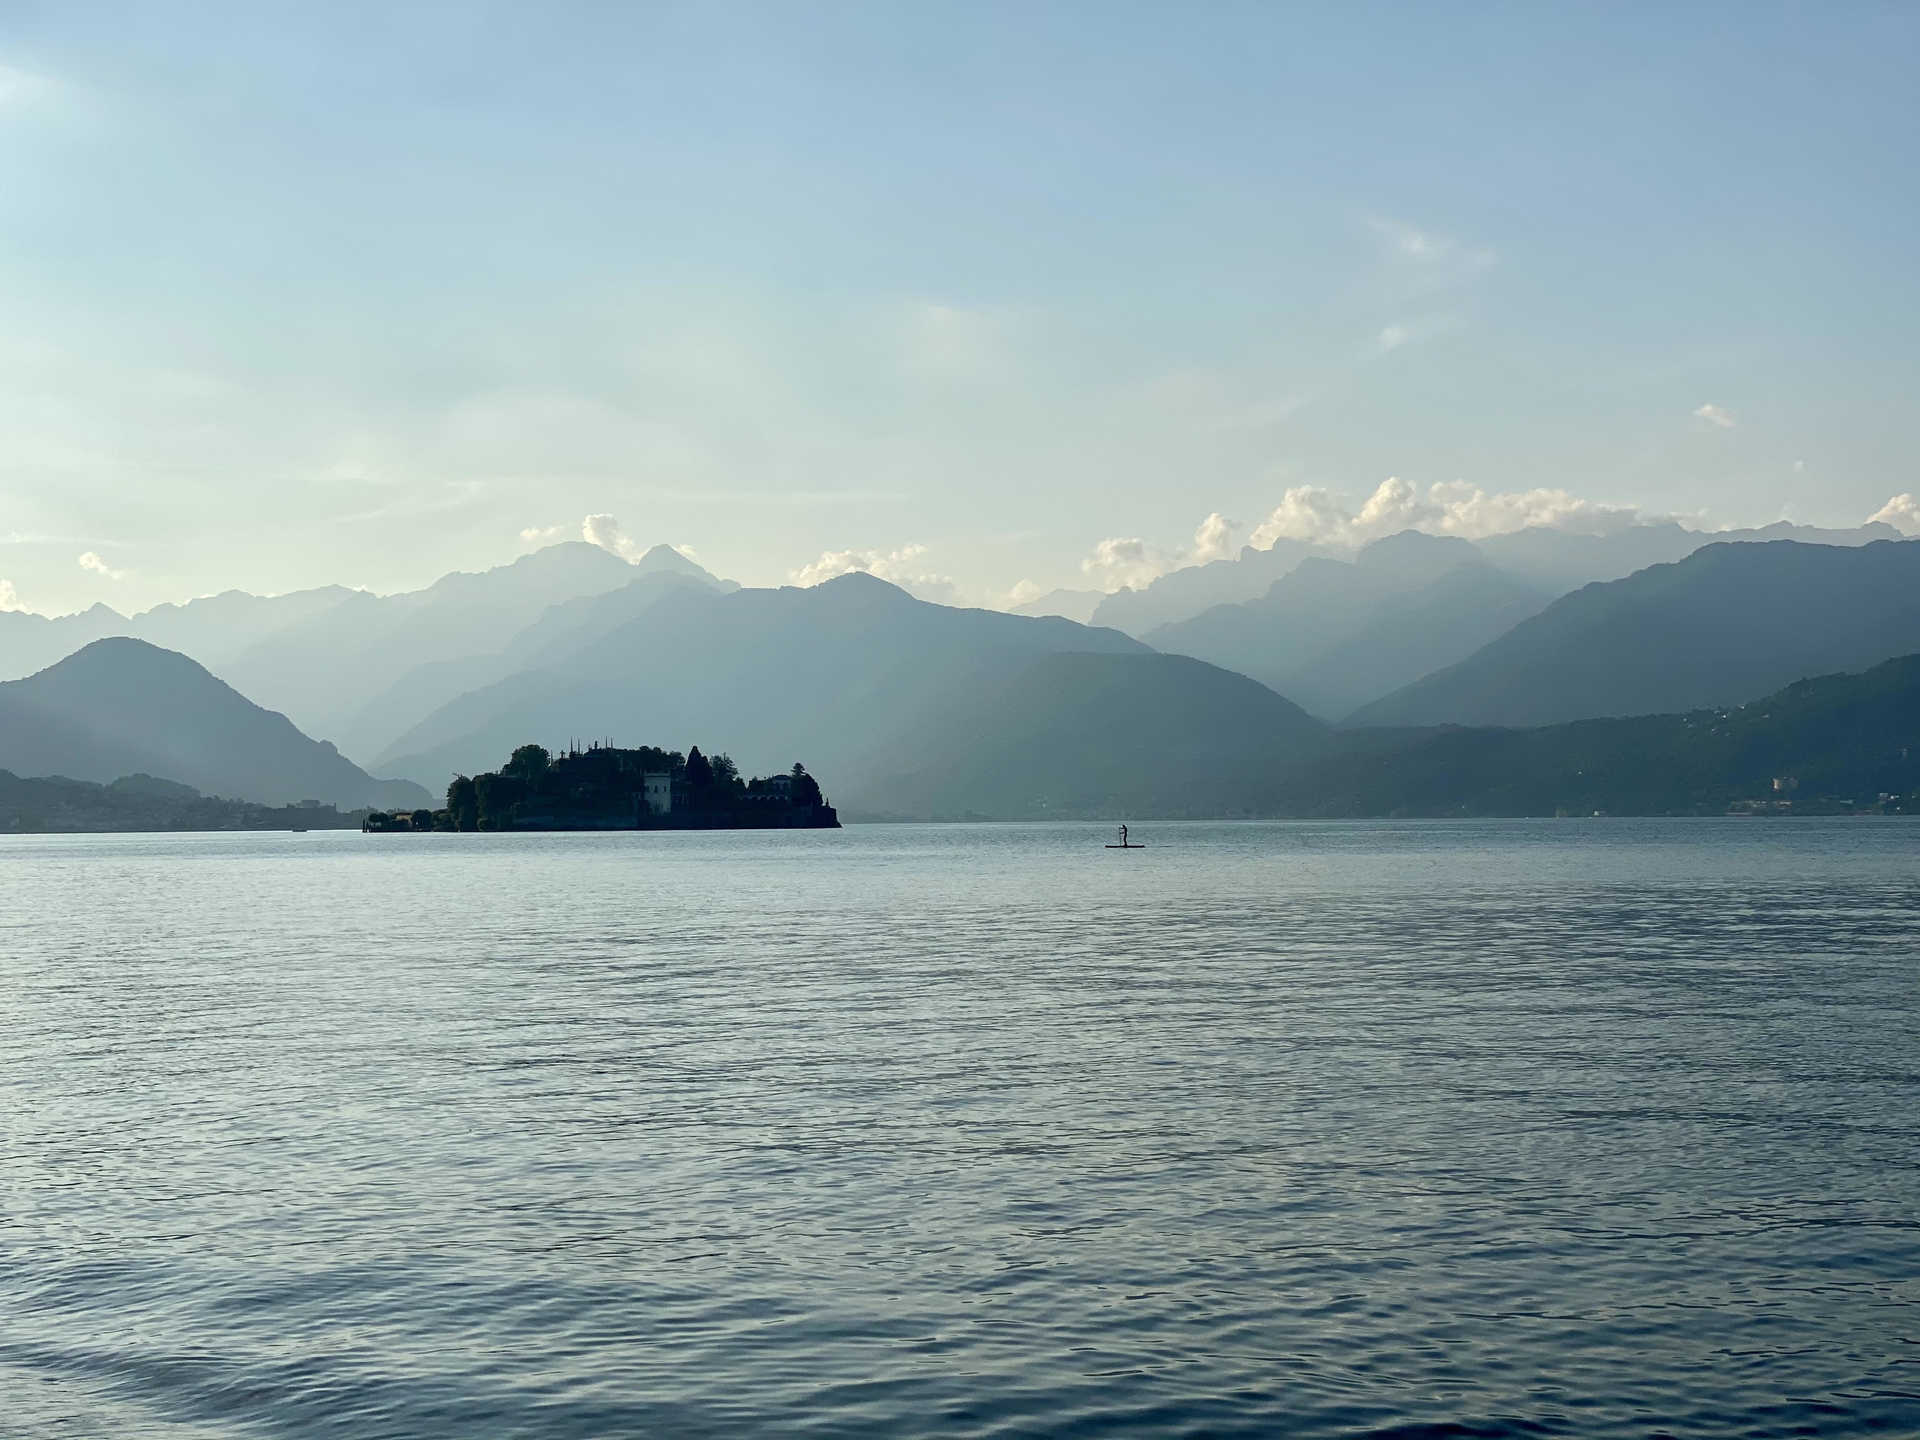 Voyage à thème : les grands lacs italiens orta majeur et come